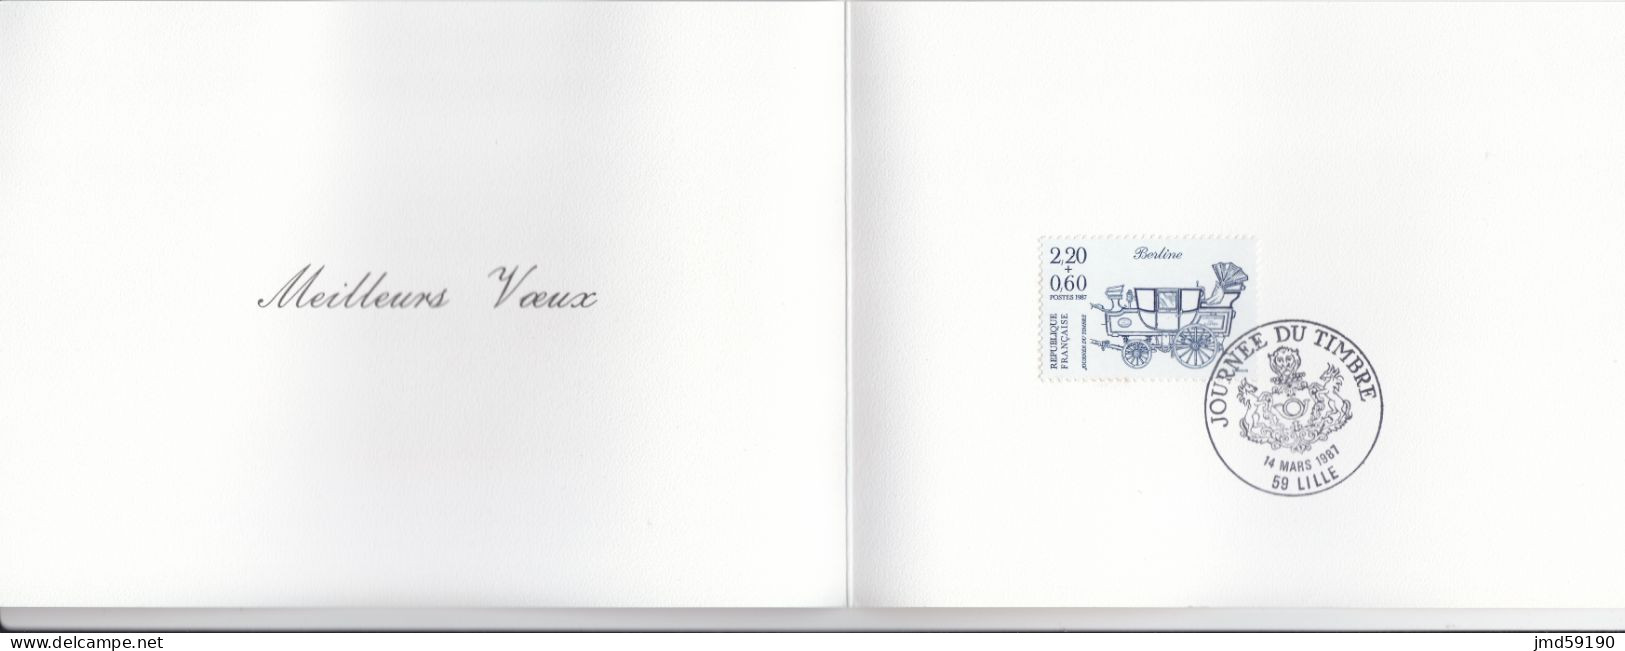 Timbre 2469 JOURNEE DU TIMBRE Sur Carton Imprimé Avec Cachet JOURNEE DU TIMBRE Du 14/03/1987 59 LILLE - 1961-....